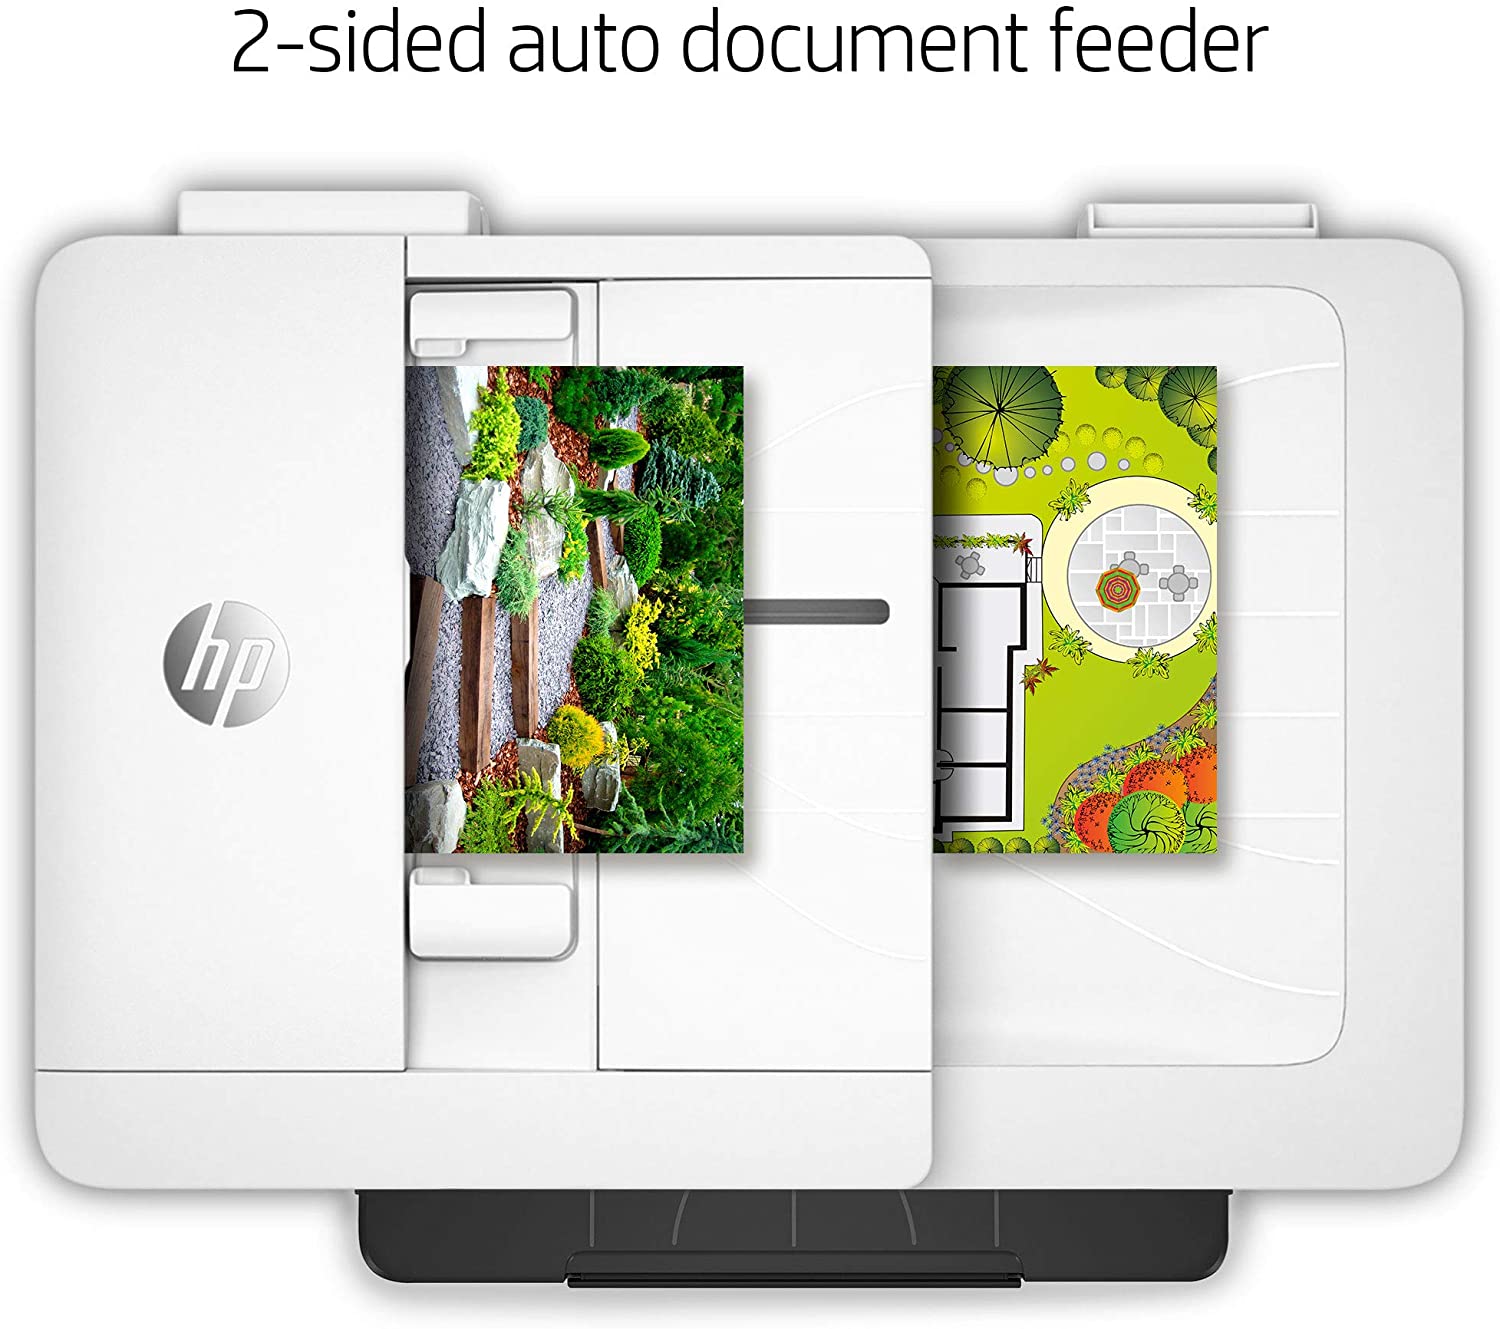 Impresora HP Multifunción OfficeJet Pro 7740 gran formato imprime, copia, escanea en A3, fax Adf automatico a doble cara Wifi color 35 ppm negro y 20 ppm color Reformada para que trabaje sin chip